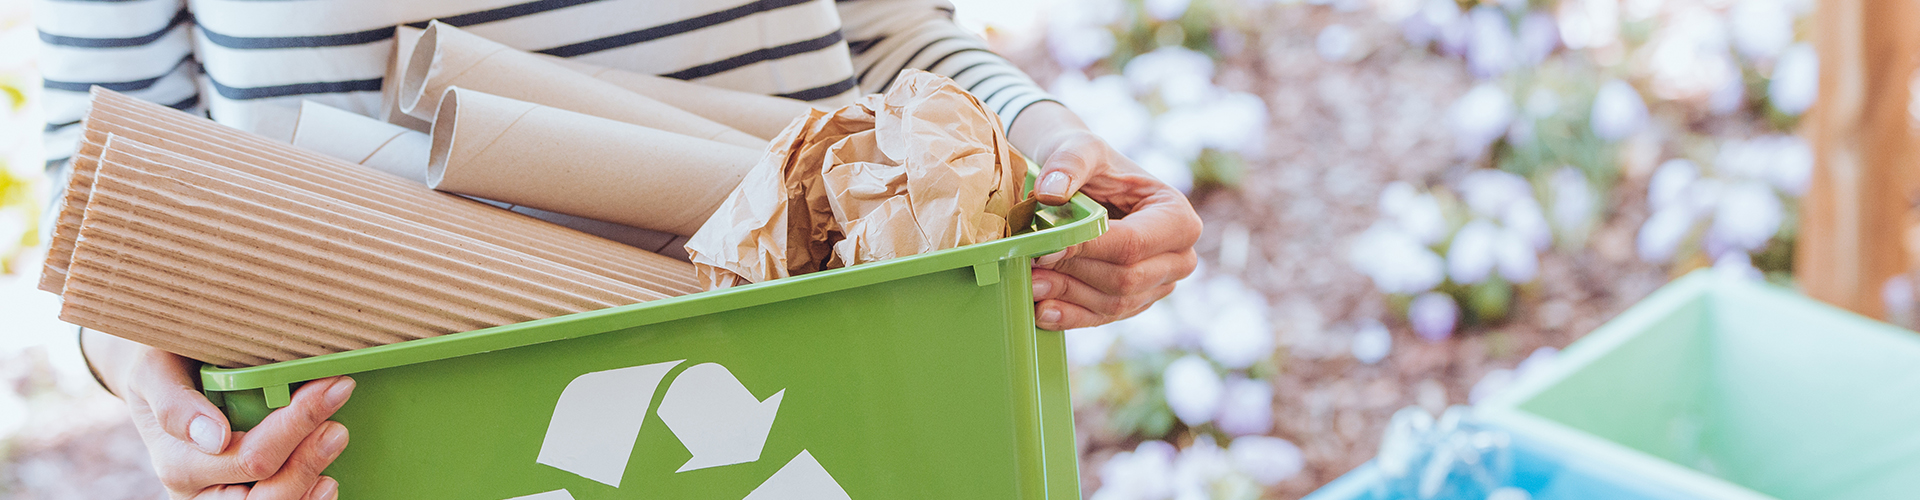 Stockfoto zum Thema Müllentsorgung. Man sieht auf dem Foto eine Frau, die einen kleinen Behälter mit Recyclingsymbol hält, in dem sich Papierabfälle befinden. Im Hintergrund sind verschwommen weitere Müllbehälter zur Mülltrennung zu sehen.